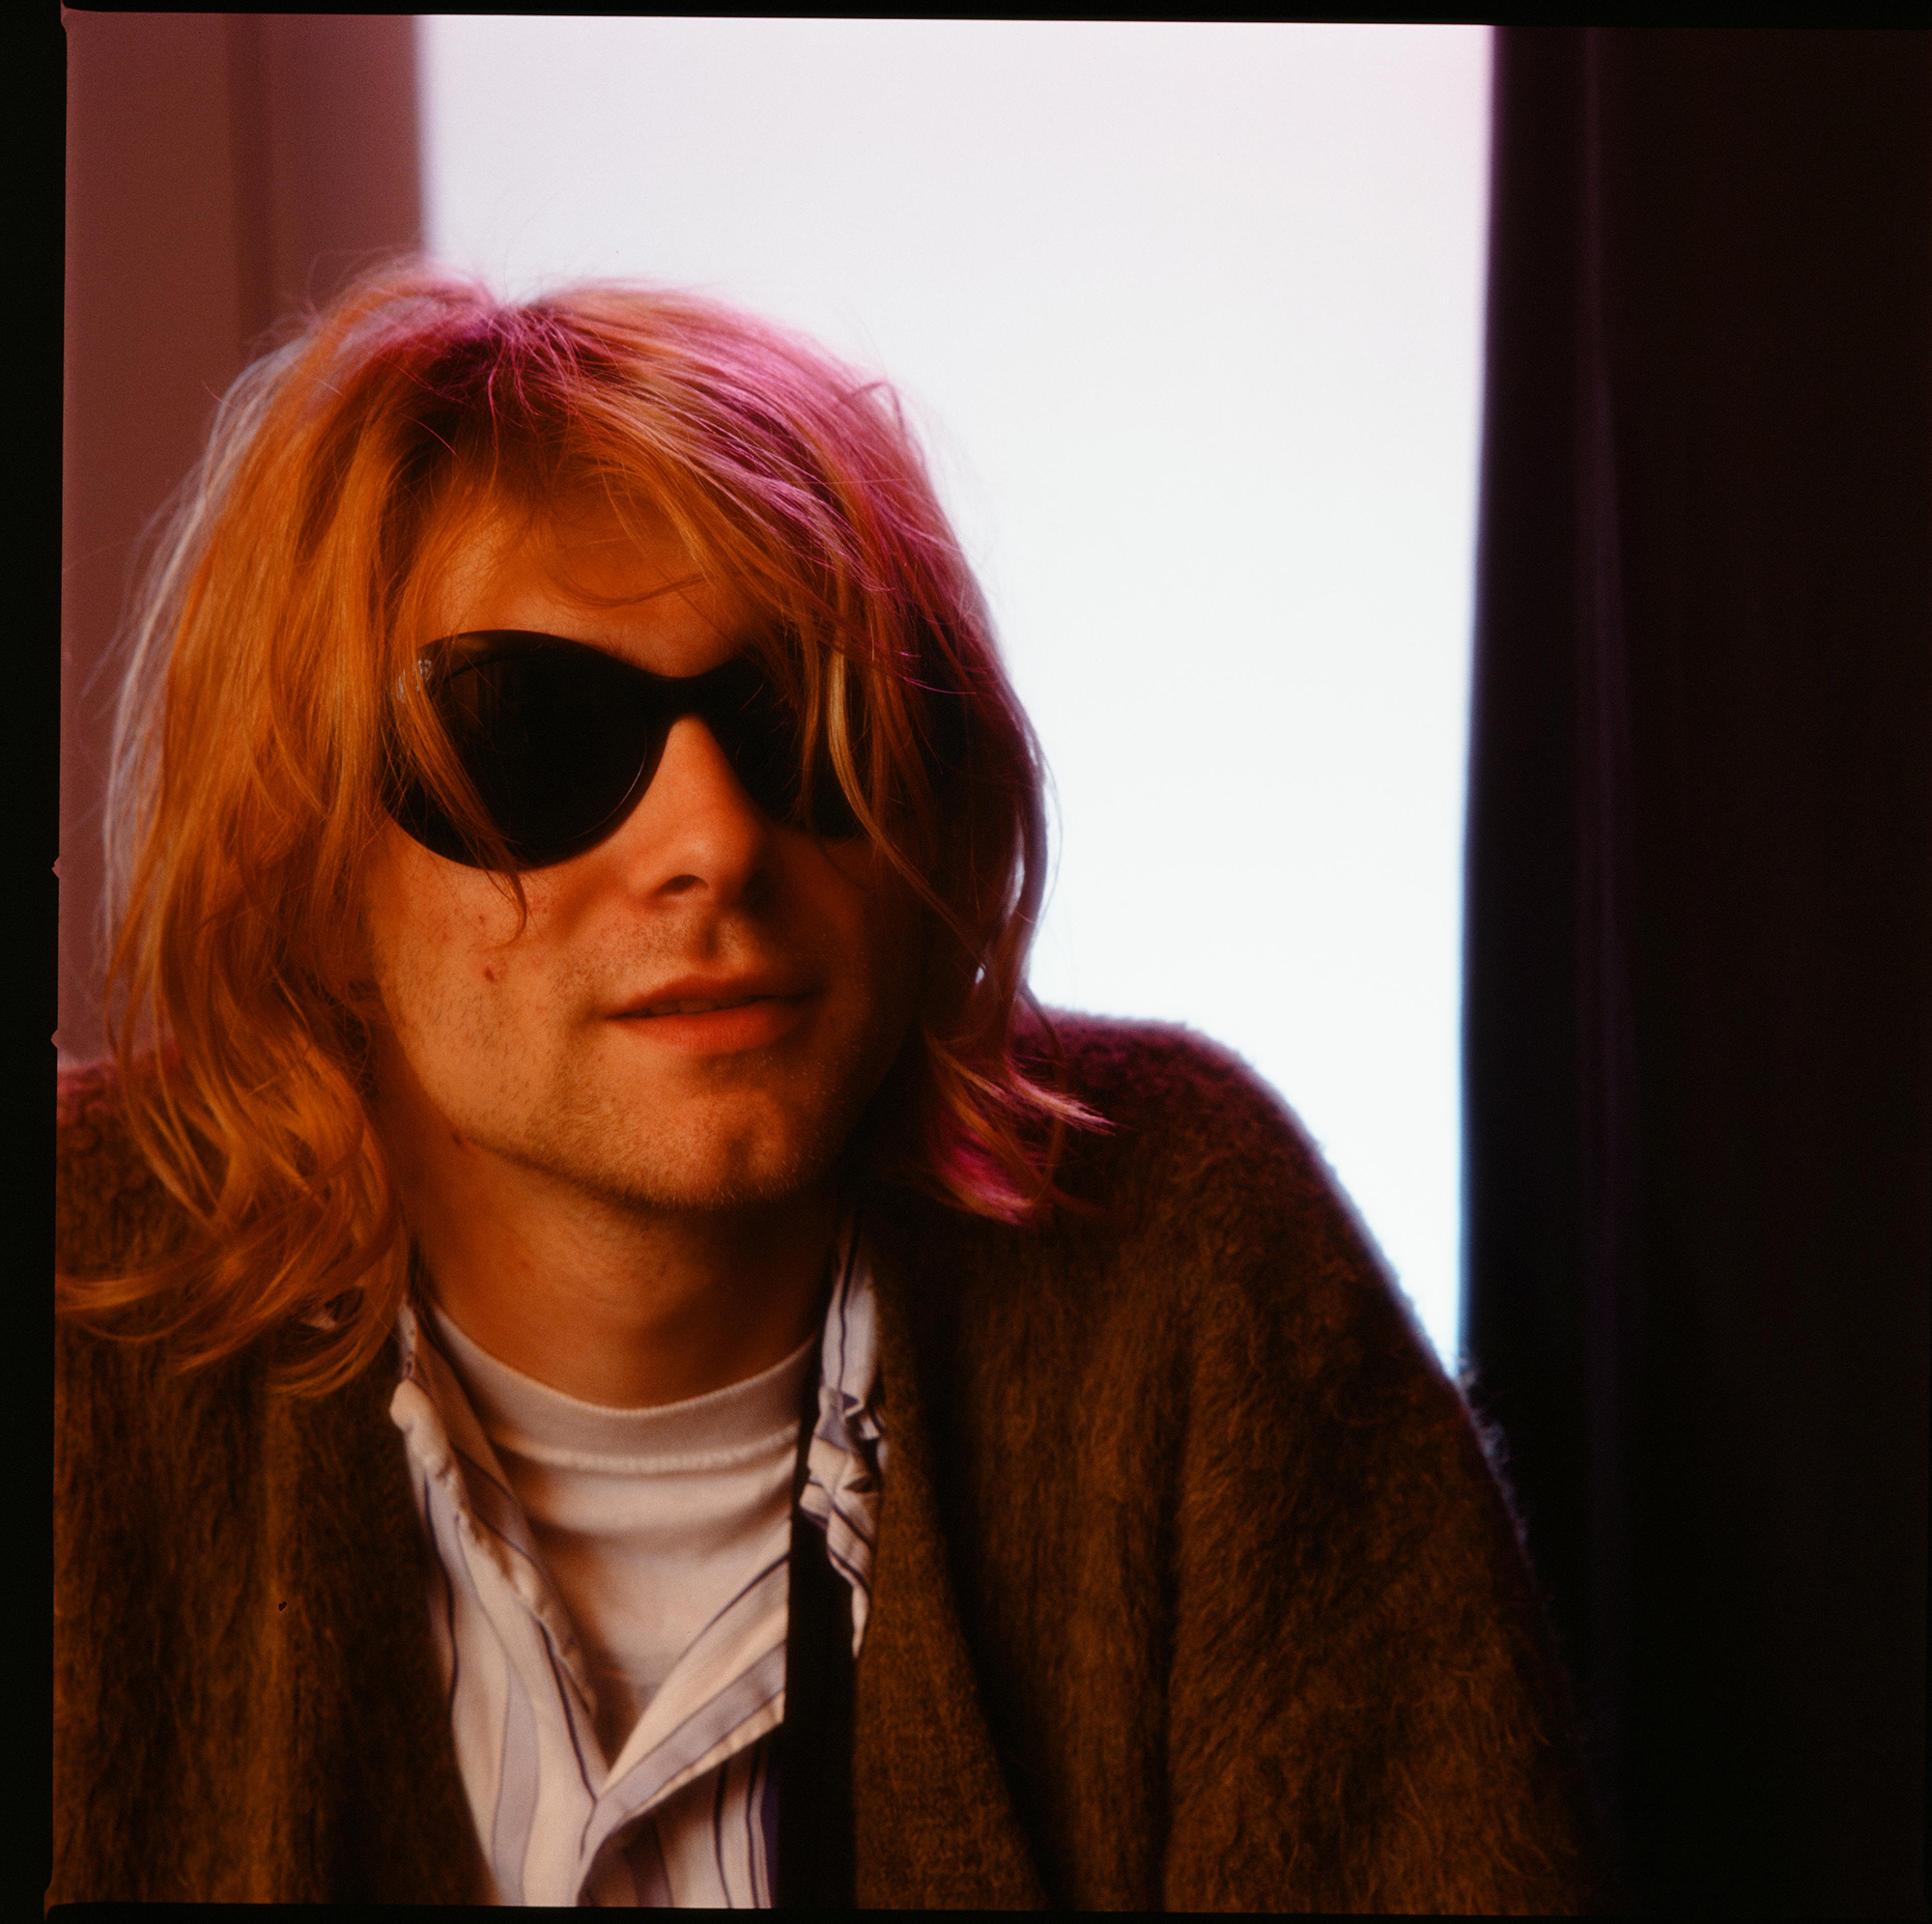 A 25 años de su muerte: El 'asesinato' de Kurt Cobain y las fotos que no habían sido vistas